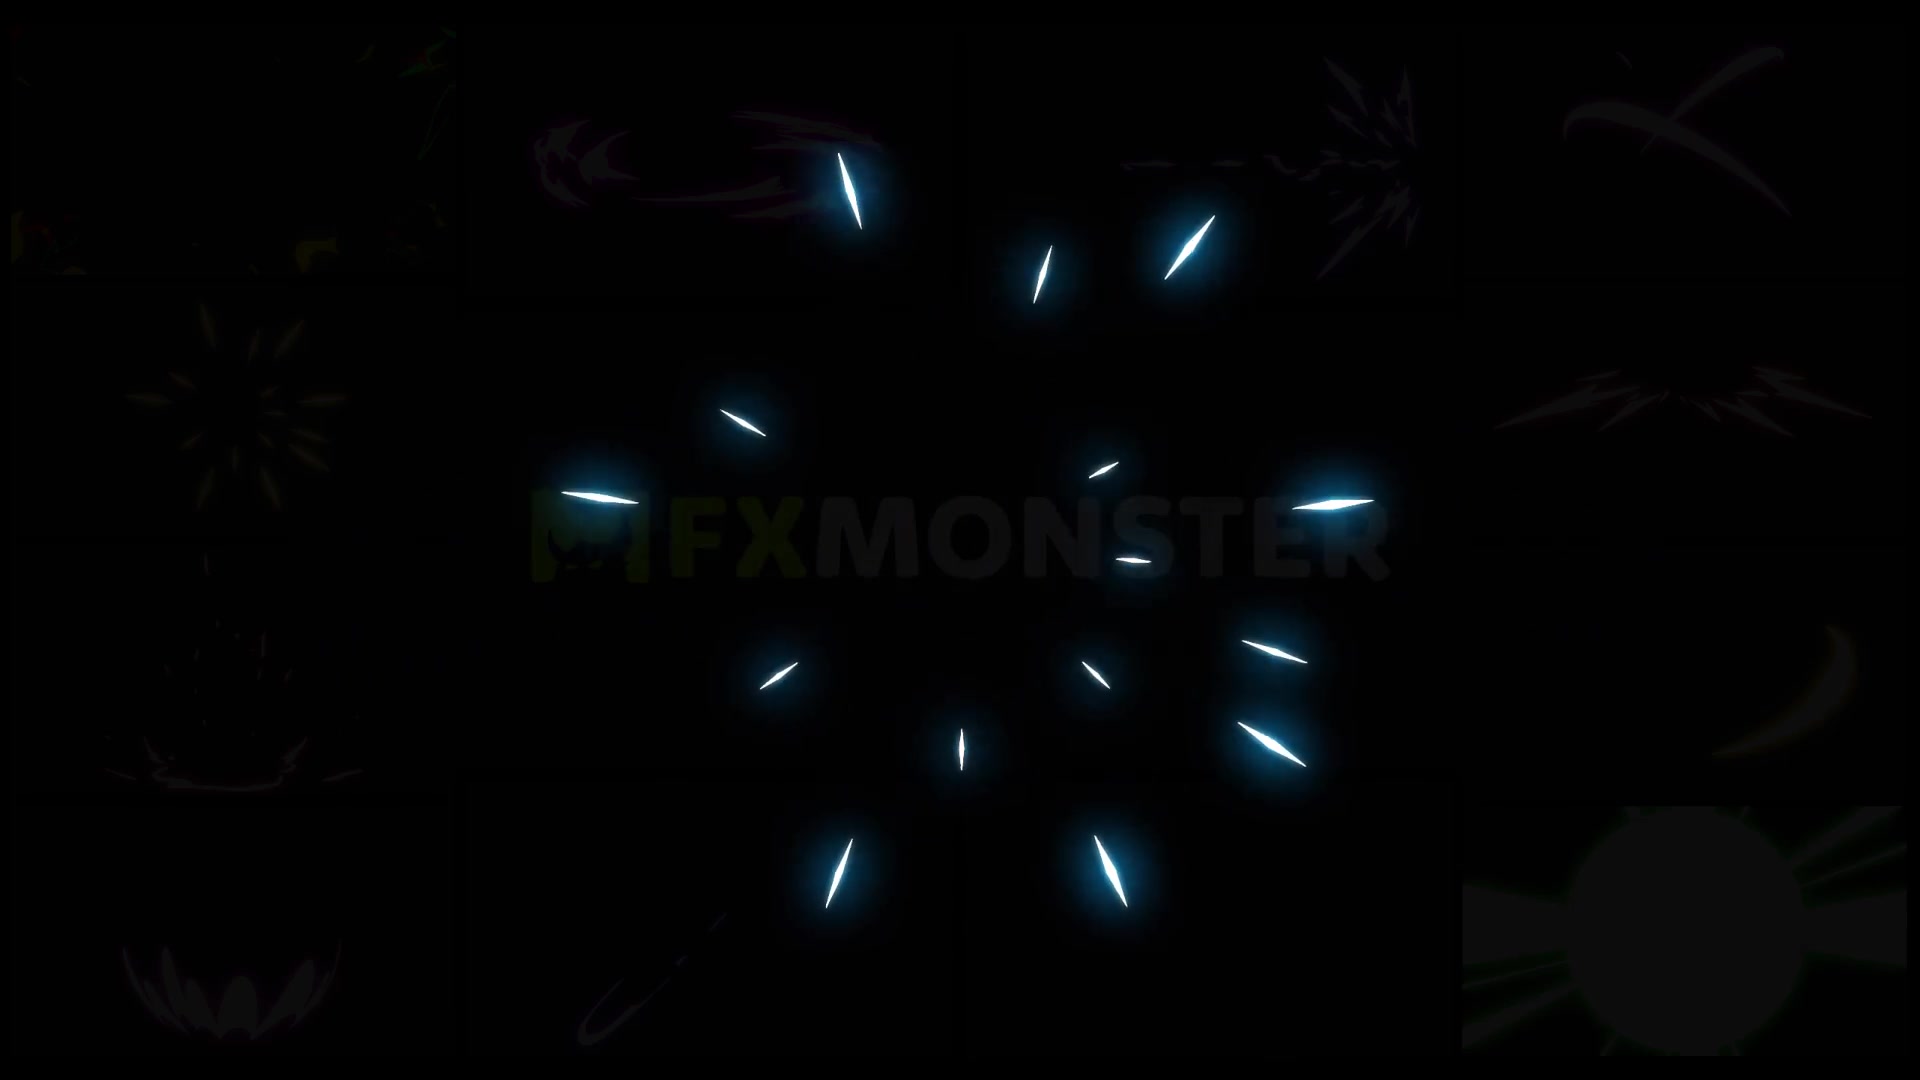 Energy Elements | Premiere Pro MOGRT Videohive 27597354 Premiere Pro Image 11